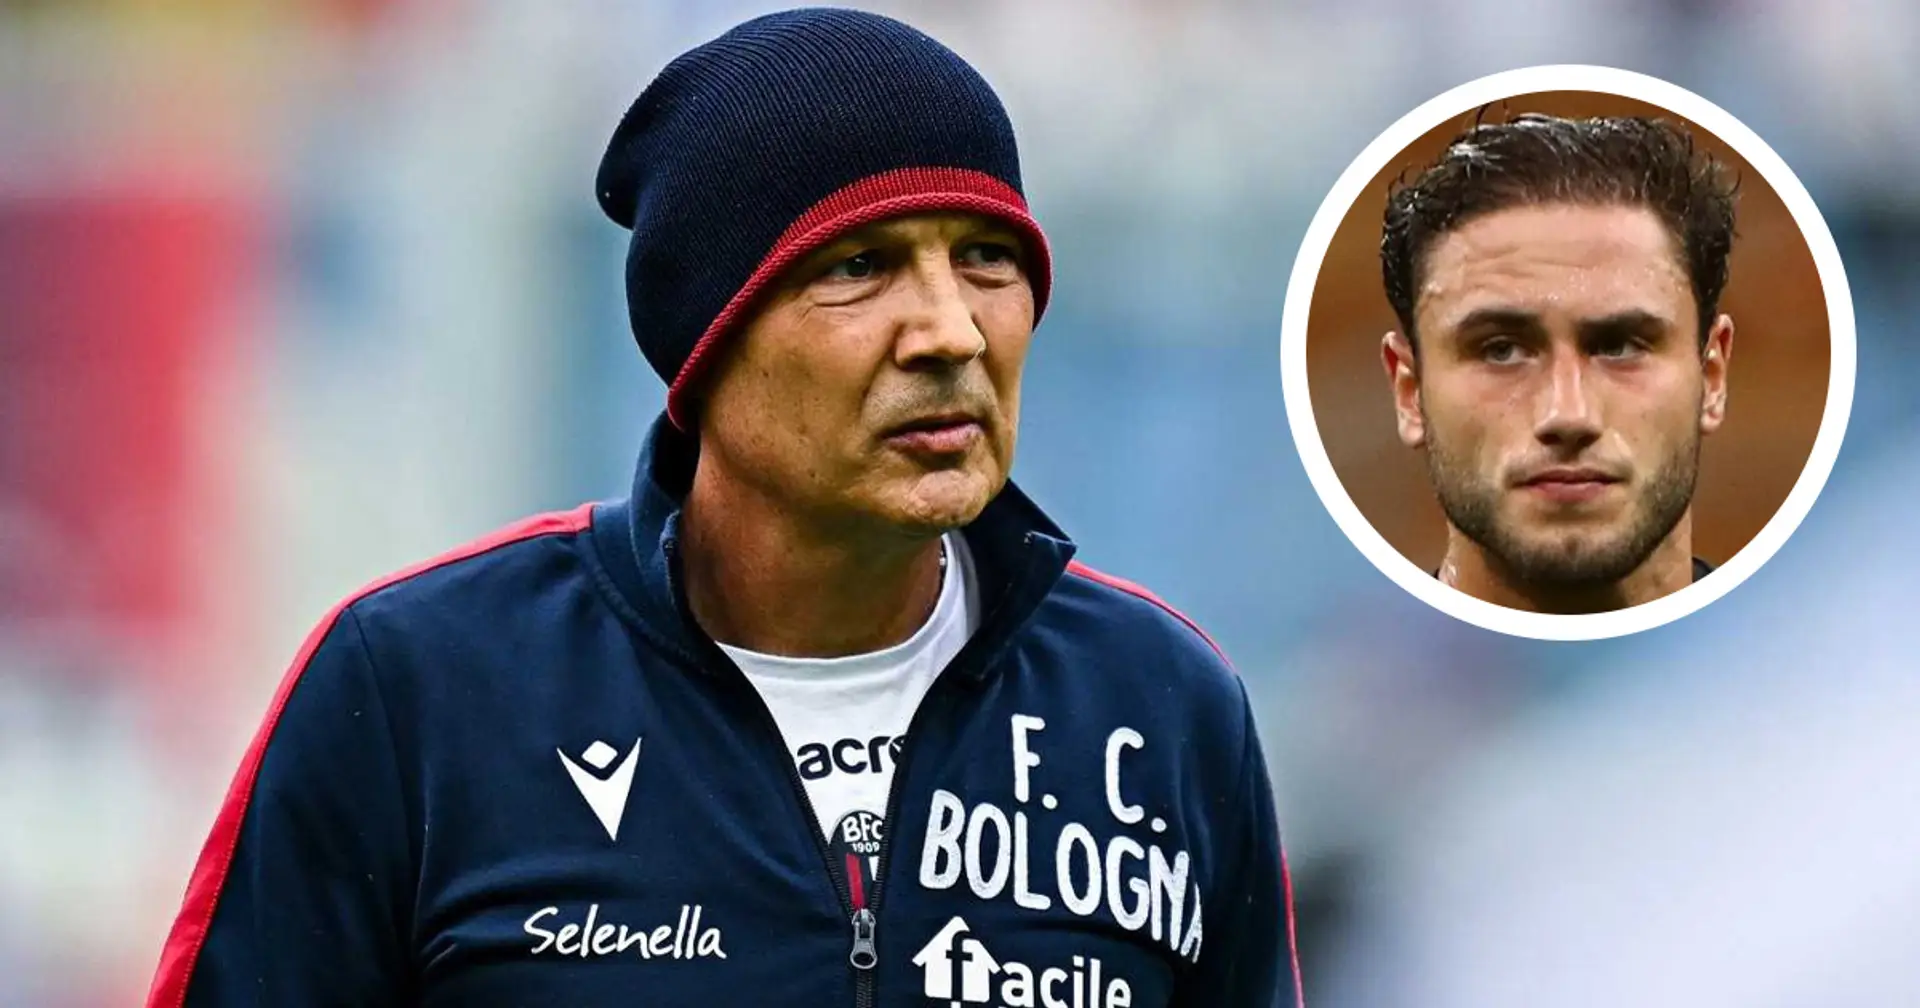 "Faccio fatica a trovare le parole": il commovente saluto di Calabria all'ex tecnico del Milan Mihajlovic